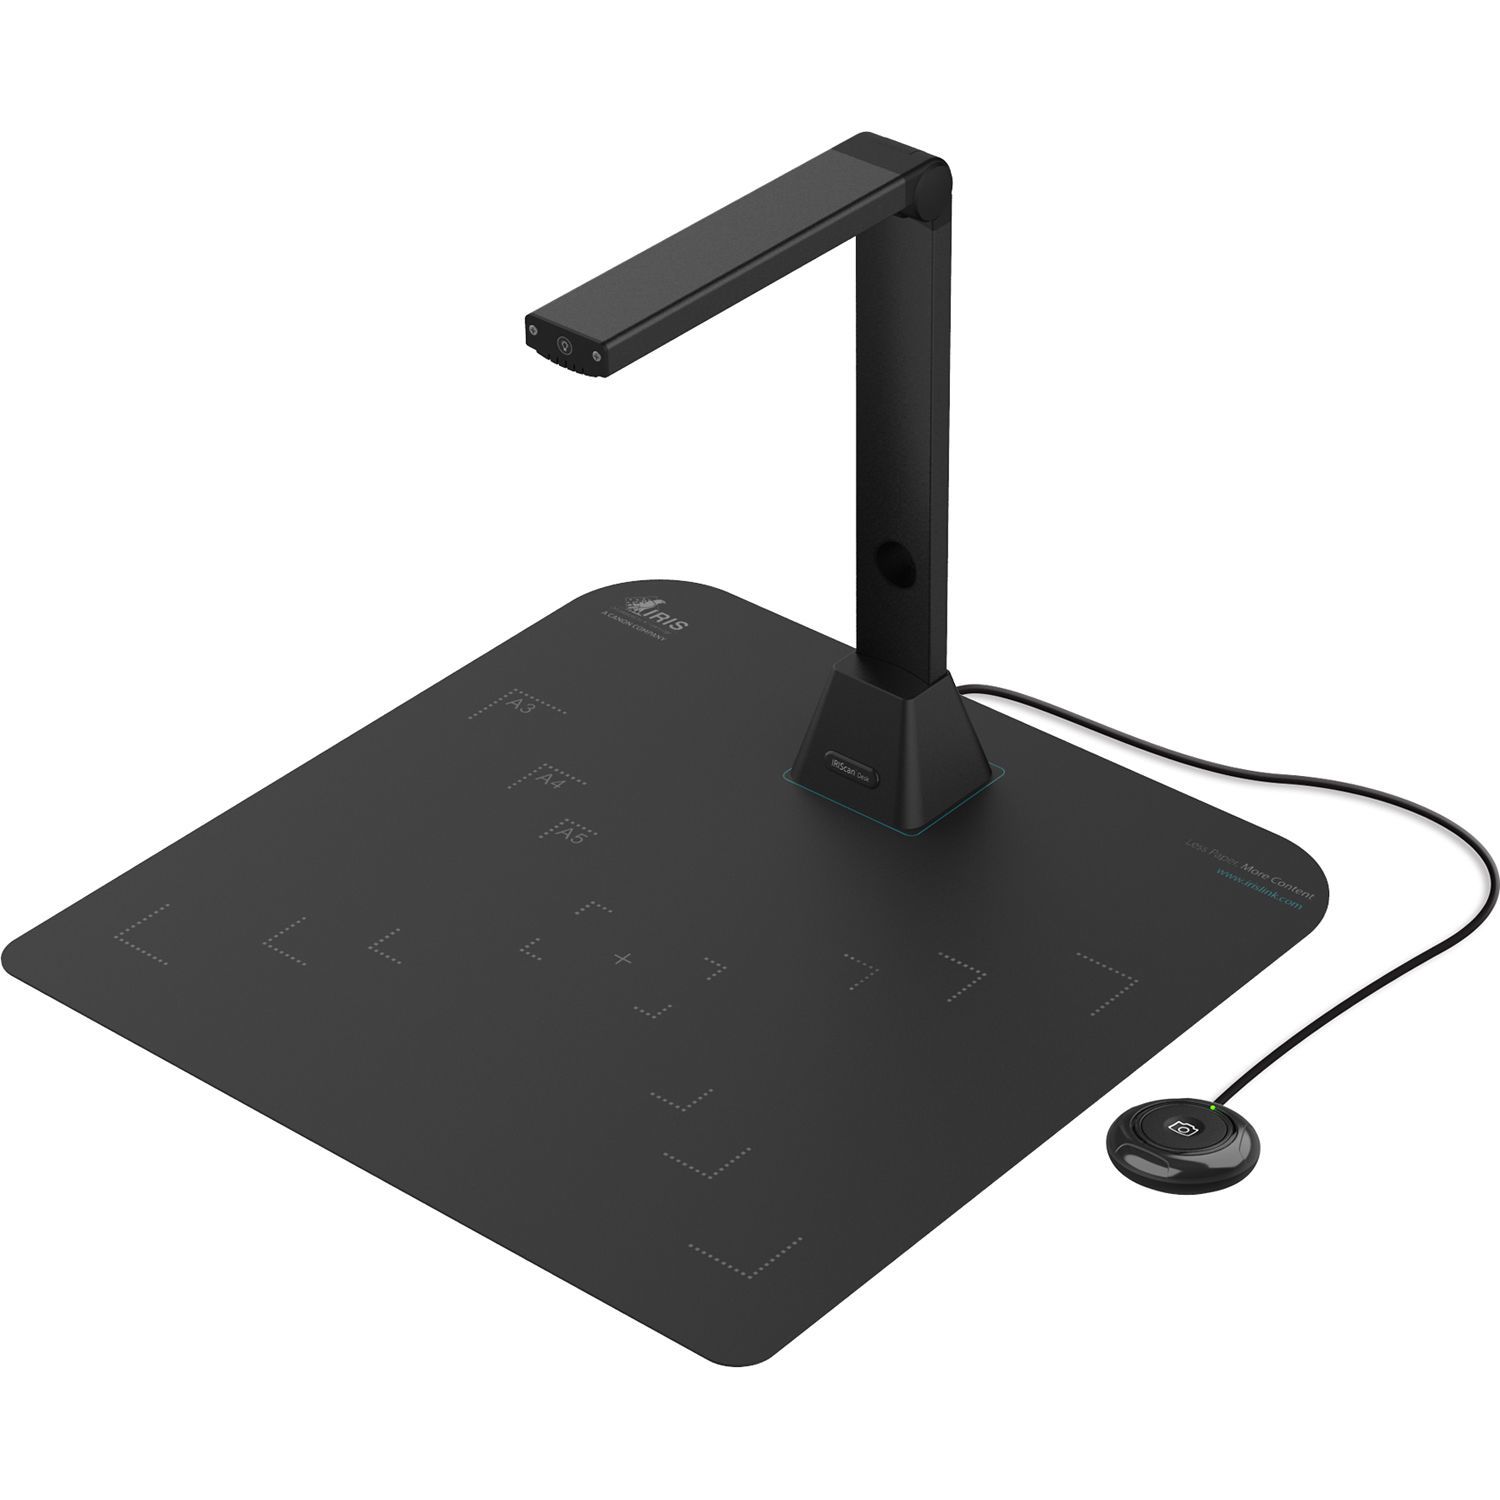 459838 - Cmara Escner de Sobremesa IRIS Desk 5 Pro A3 USB Negro (459838)